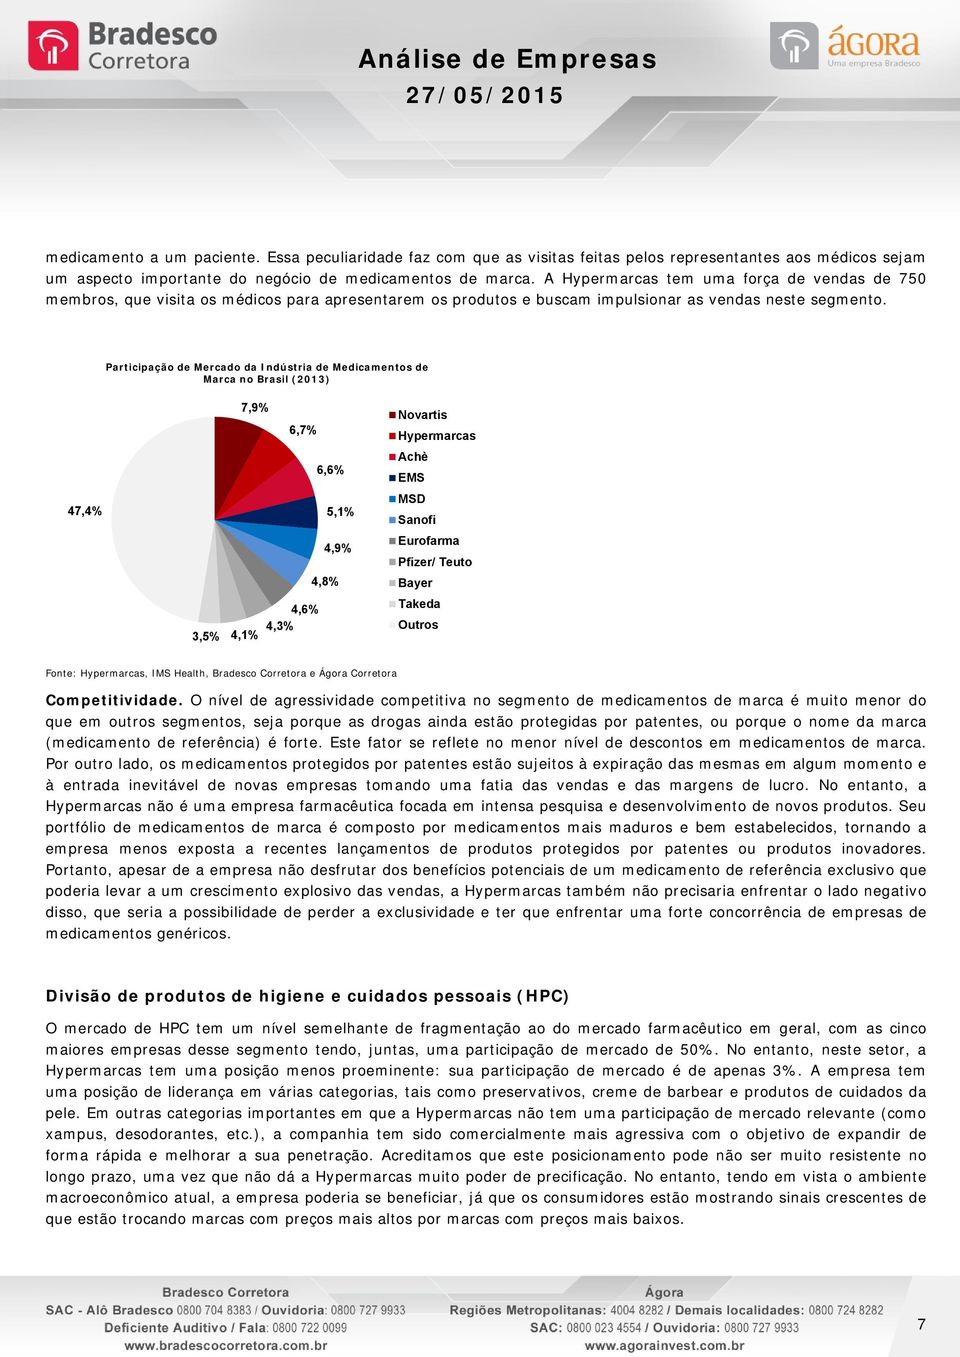 Participação de Mercado da Indústria de Medicamentos de Marca no Brasil (2013) 47,4% 3,5% 7,9% 6,7% 4,6% 4,3% 4,1% 6,6% 5,1% 4,9% 4,8% Novartis Achè EMS MSD Sanofi Eurofarma Pfizer/ Teuto Bayer